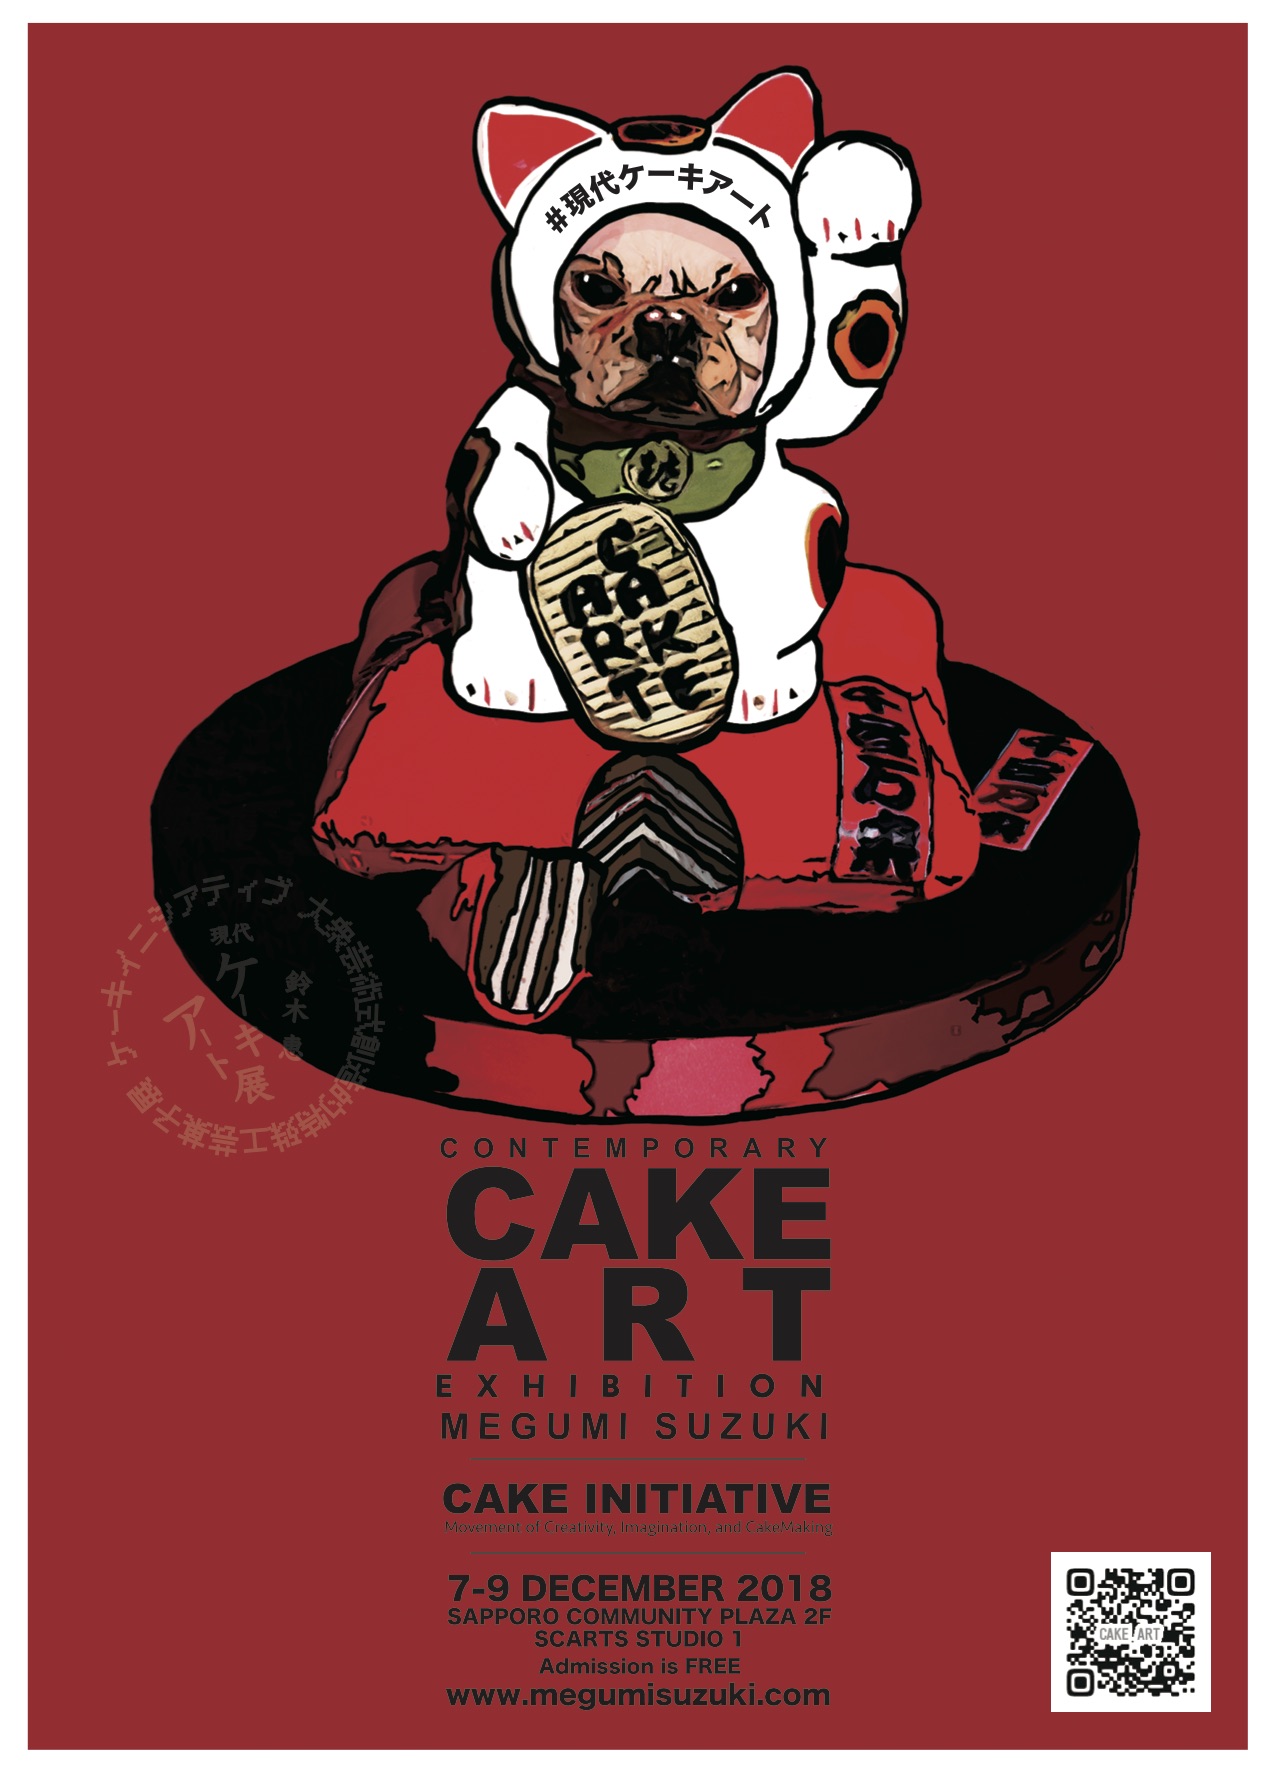 鈴木 恵 現代ケーキアート展 「ケーキ イニシアティブ」イメージ